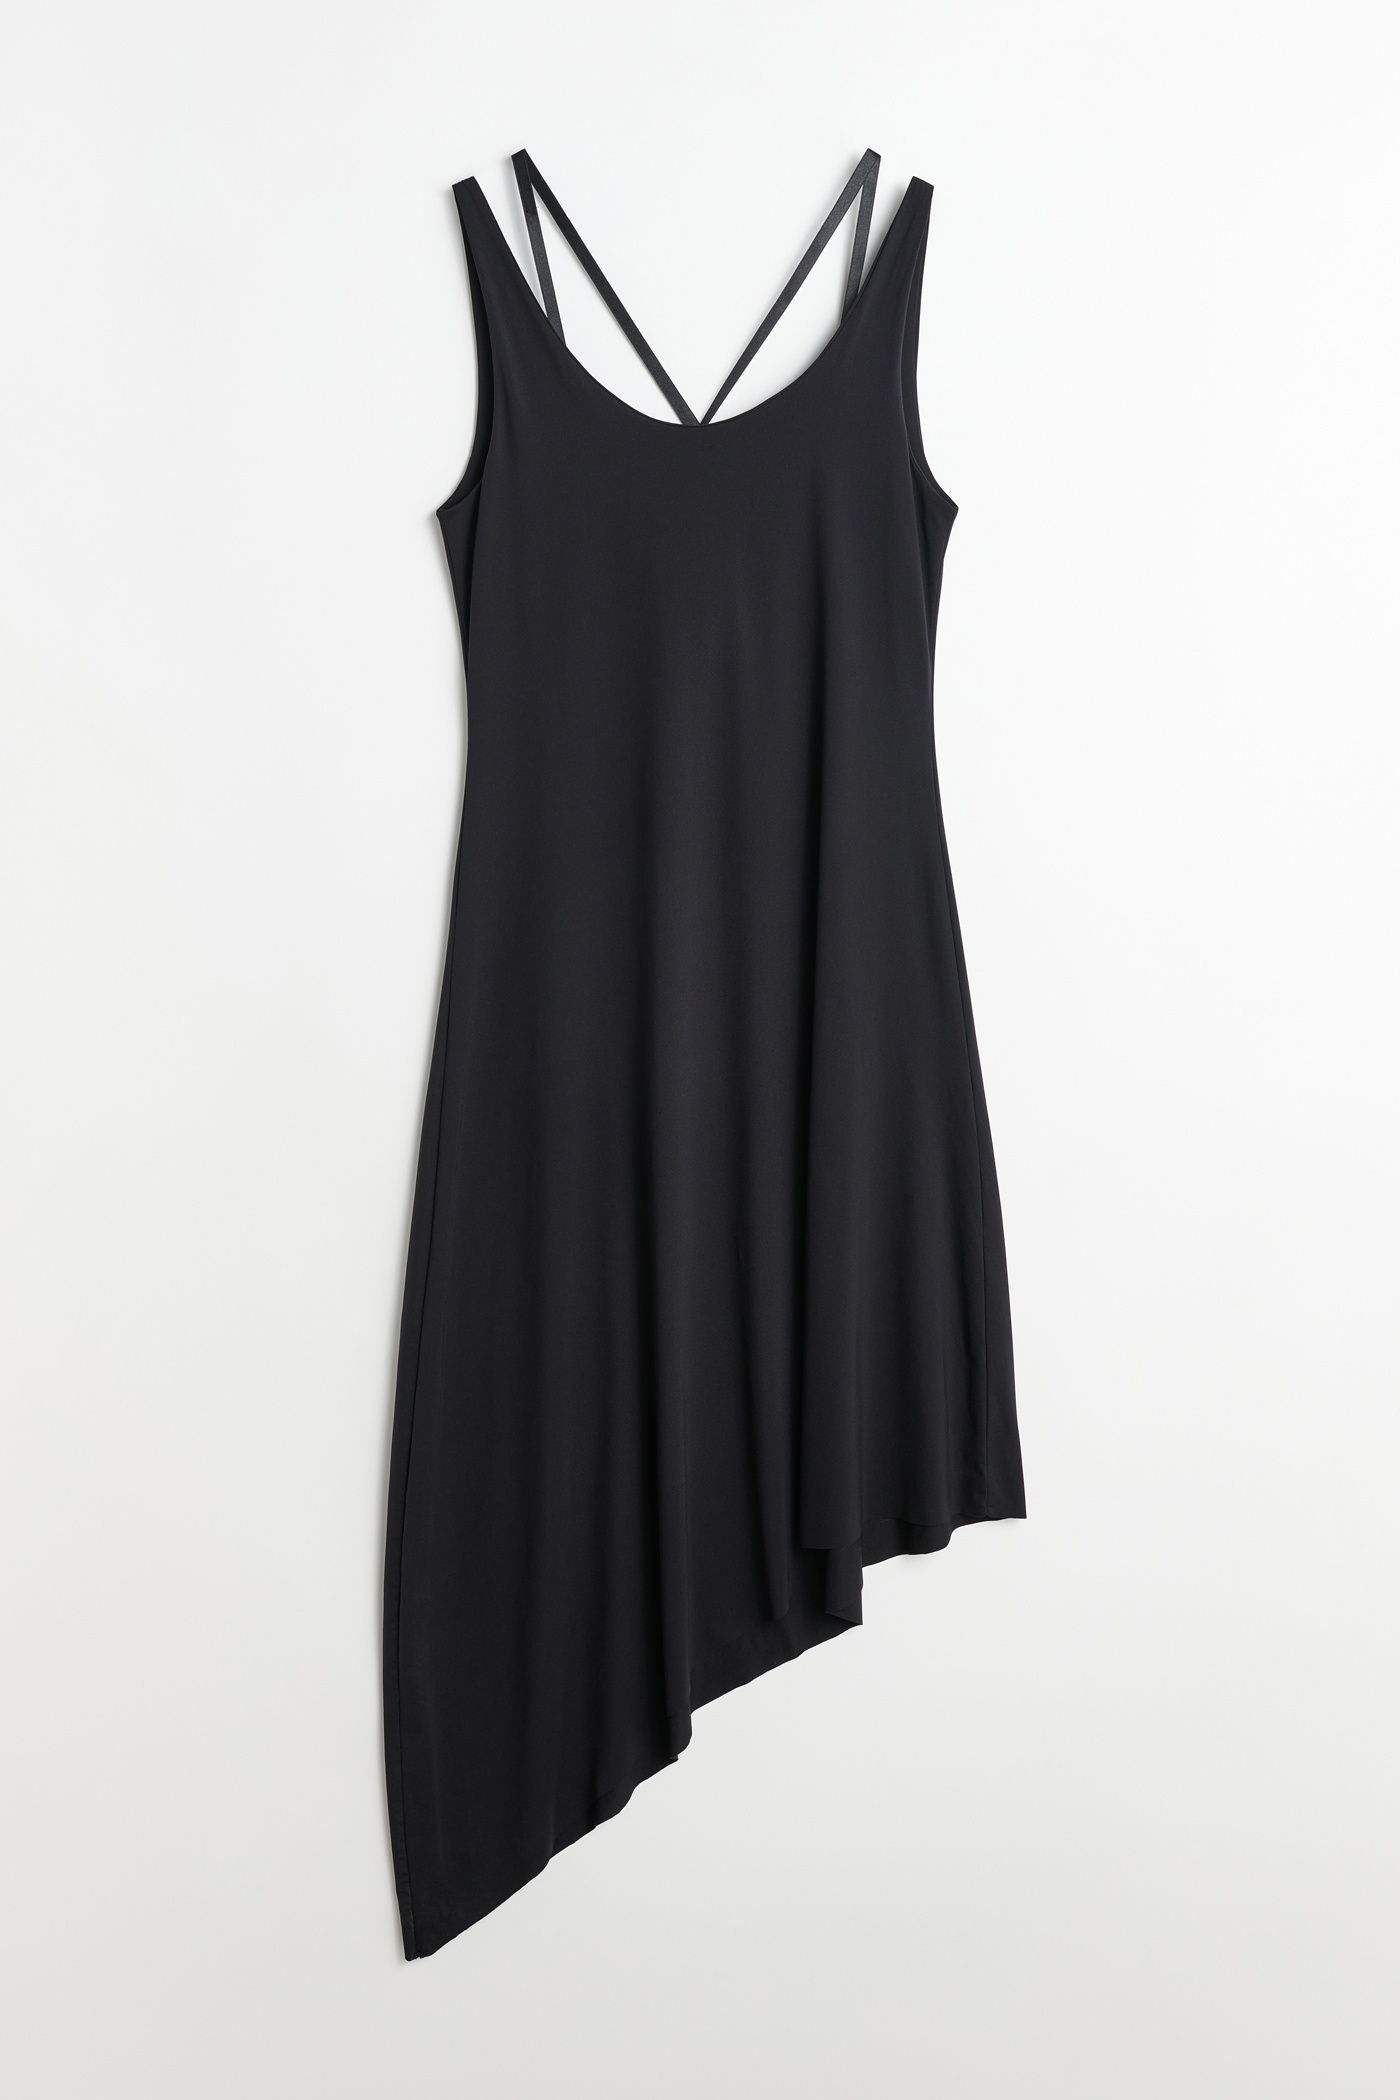 Hang Dress Black Super Sport Jersey - 1